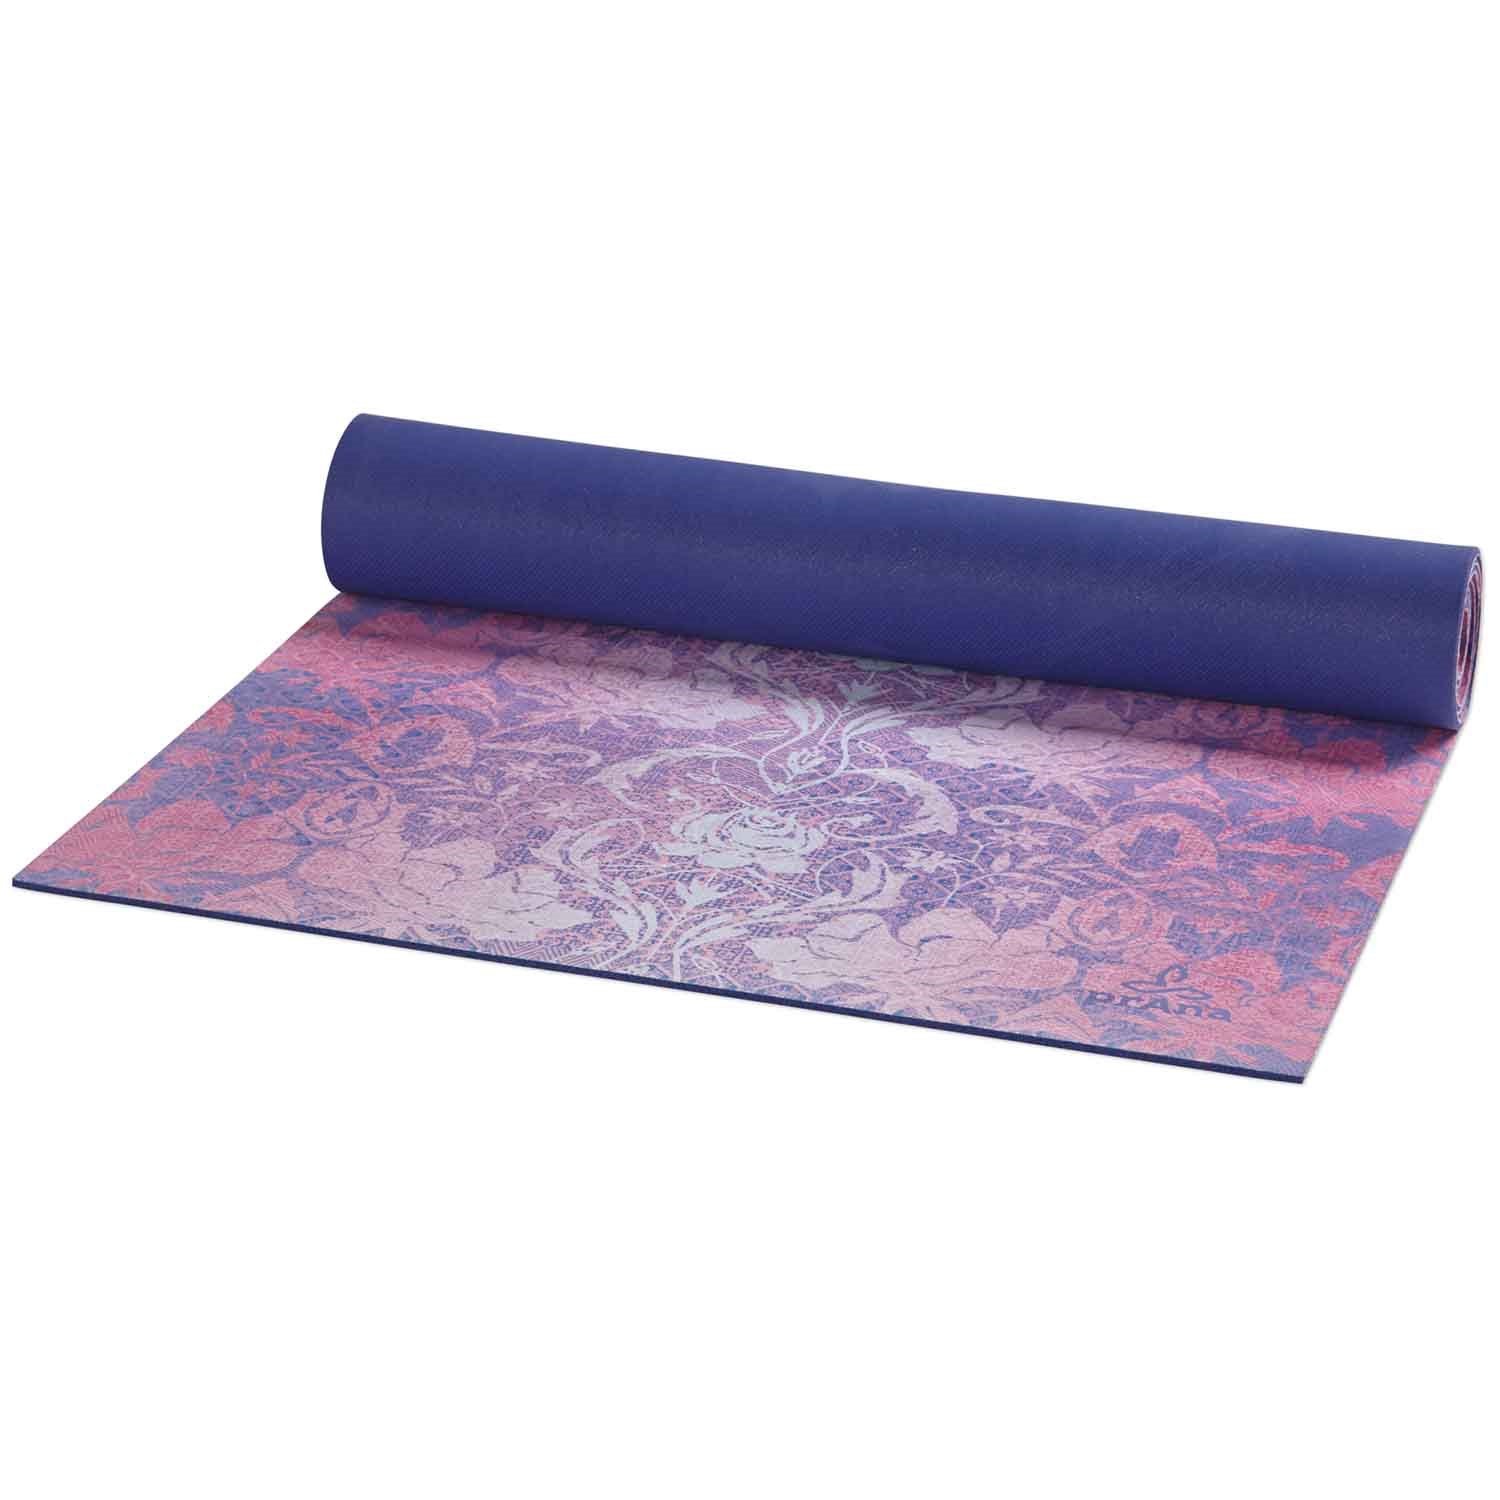 microfiber yoga mat